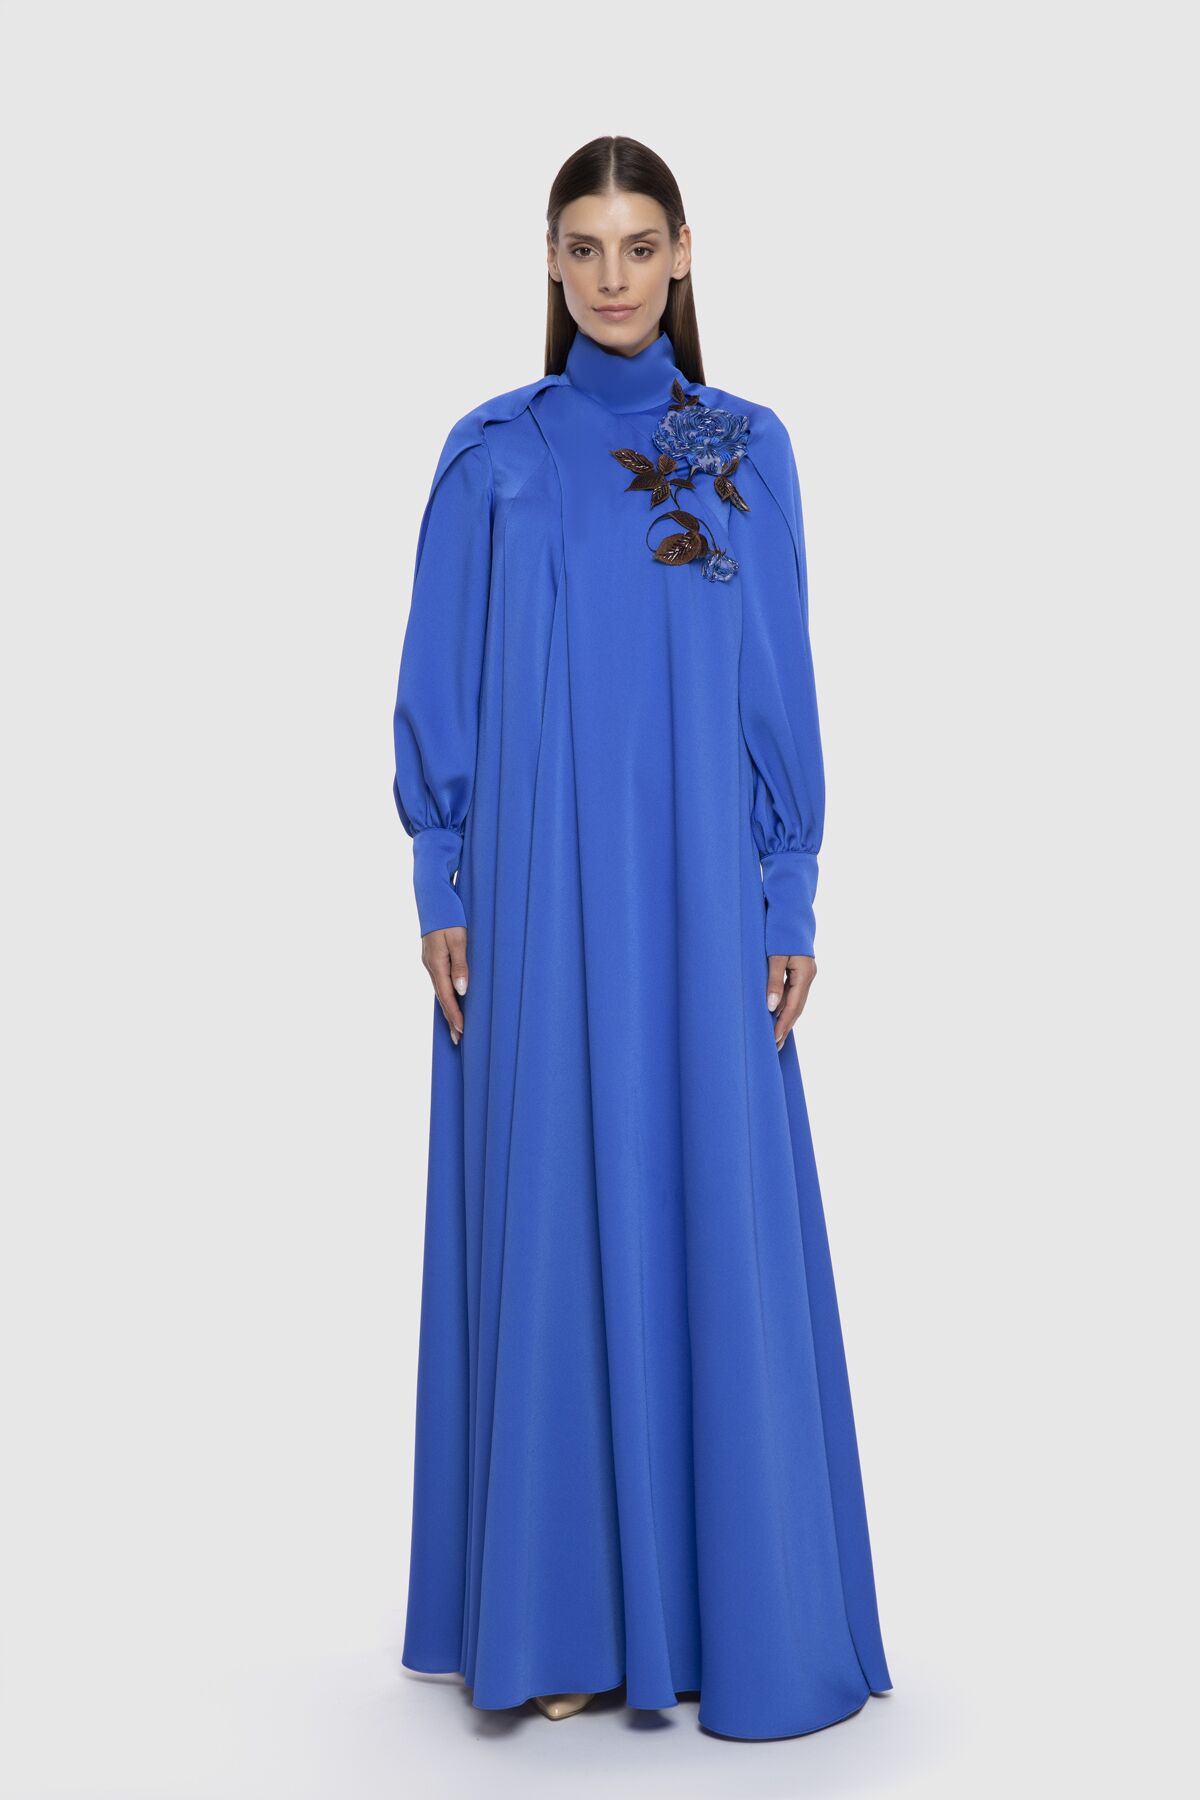  GIZIA - Floral Appliqued Flowy Long Blue Dress